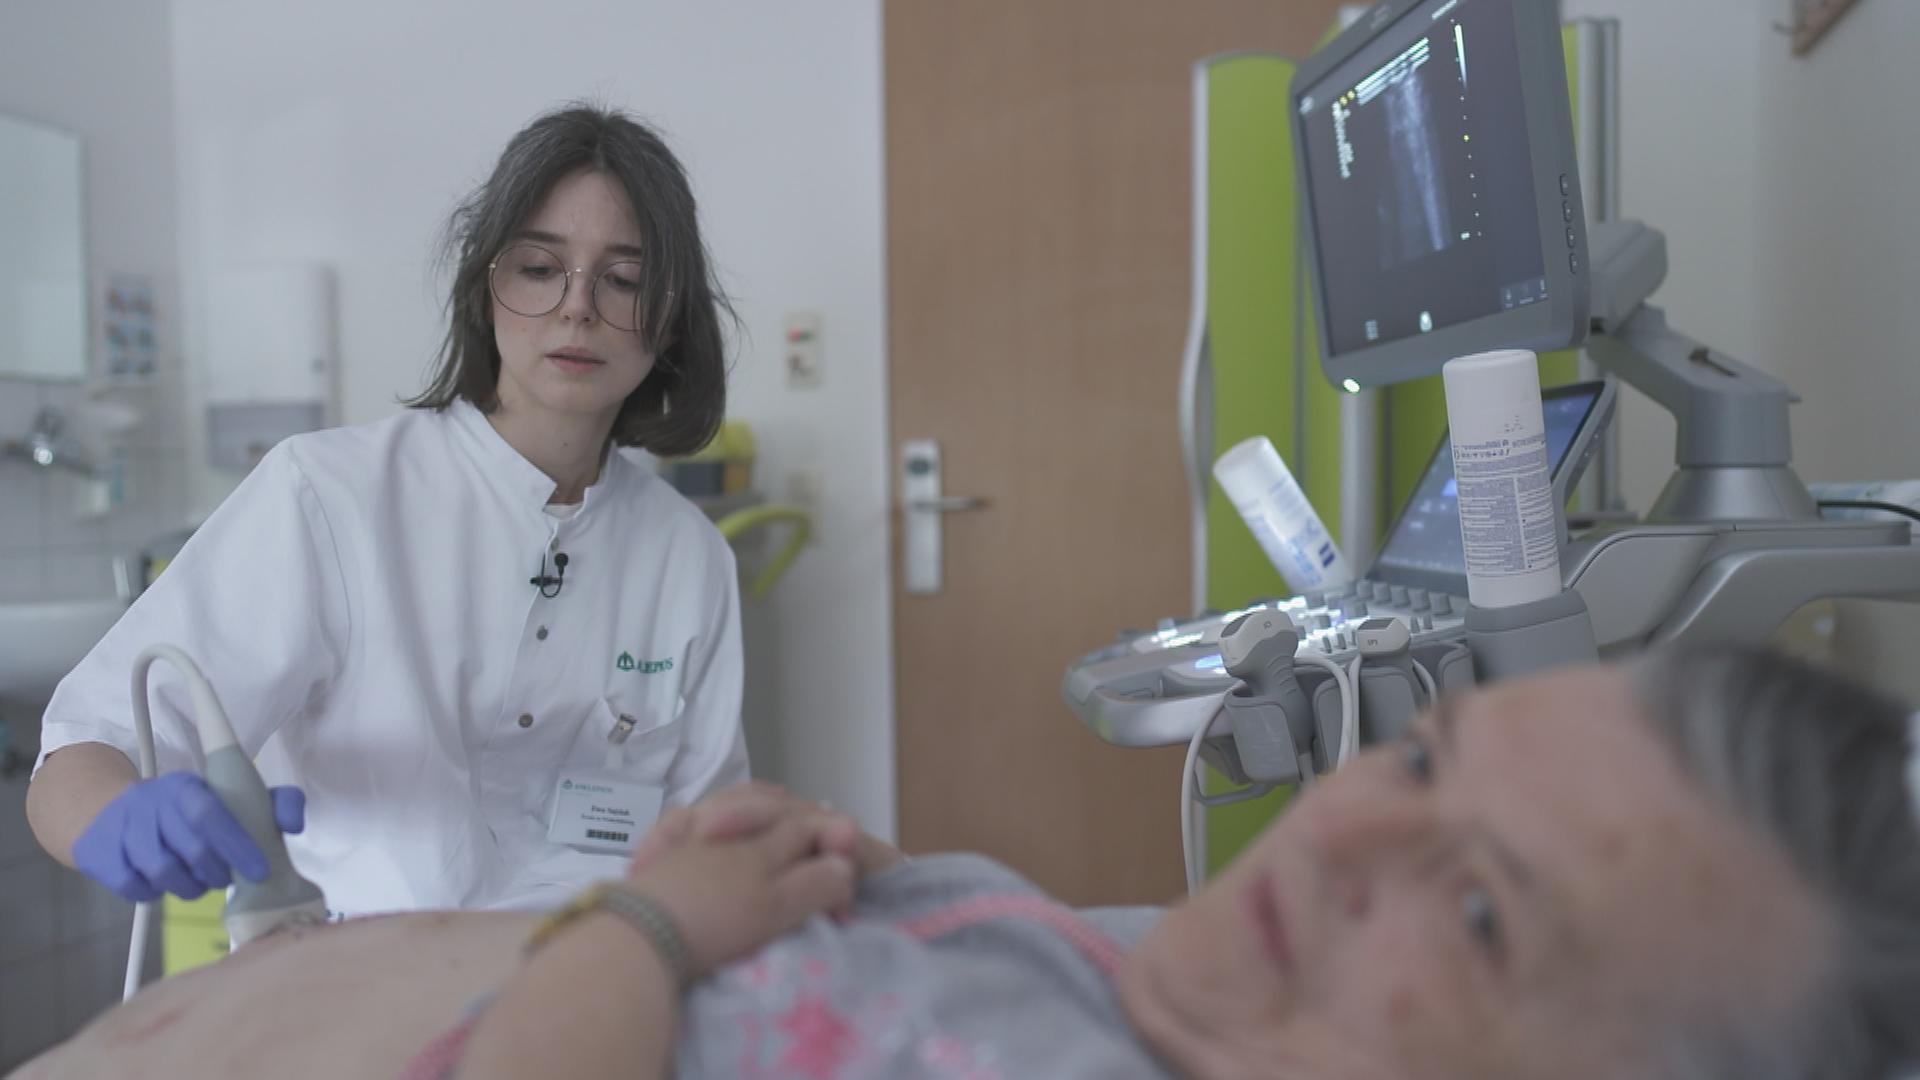 Polnische Ärztin untersucht Patientin in deutschem Krankenhaus.